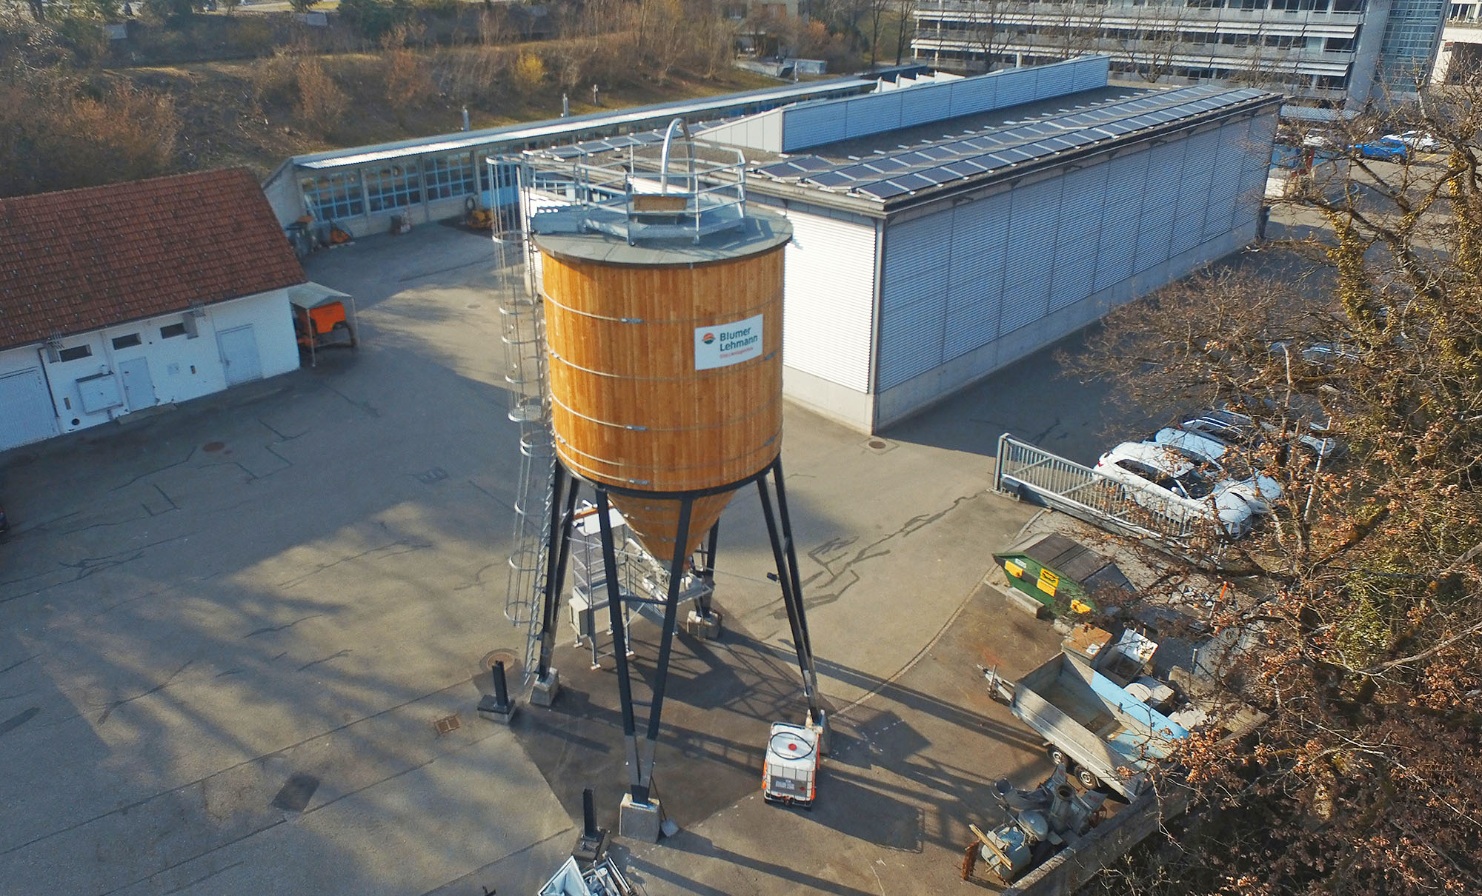 Runder Holzsilo der Gemeinde Rüti in Zürich mit einer Kapazität von 75m3